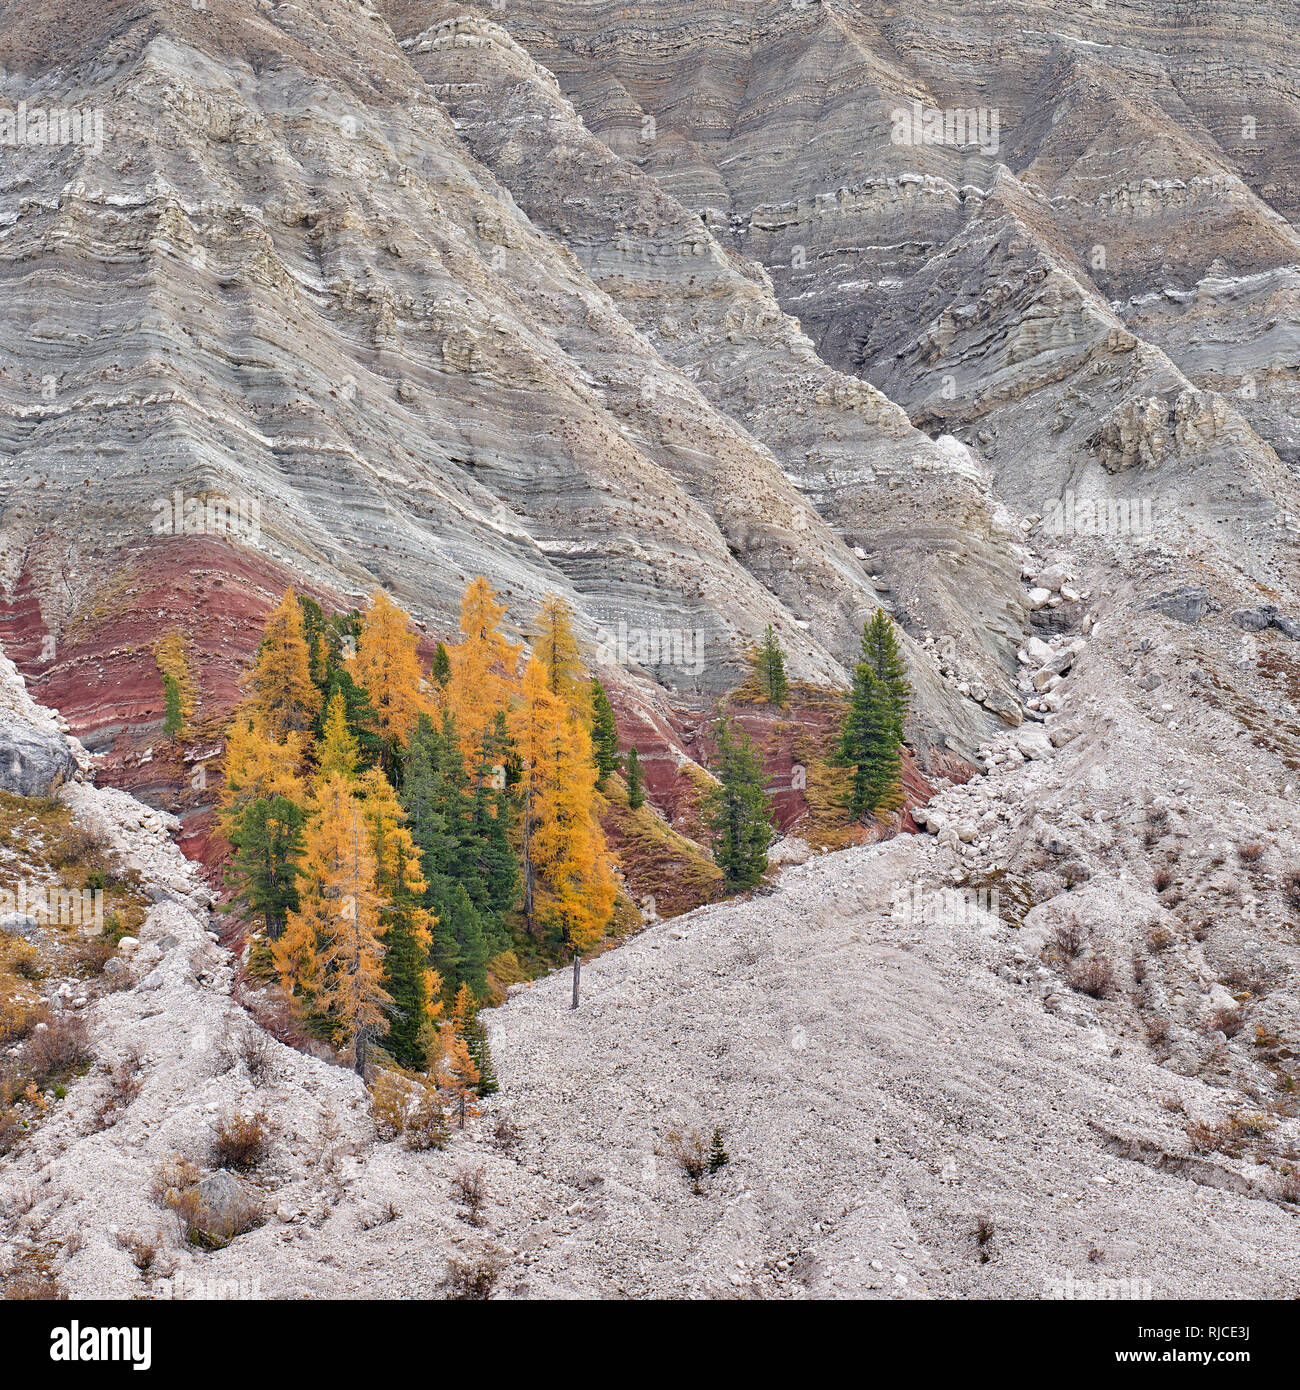 Un groupe d'arbres en automne mélèze principalement les couleurs sur la face nord de l'Odle, Groupe, Dolomites Tyrol du Sud, Italie Banque D'Images